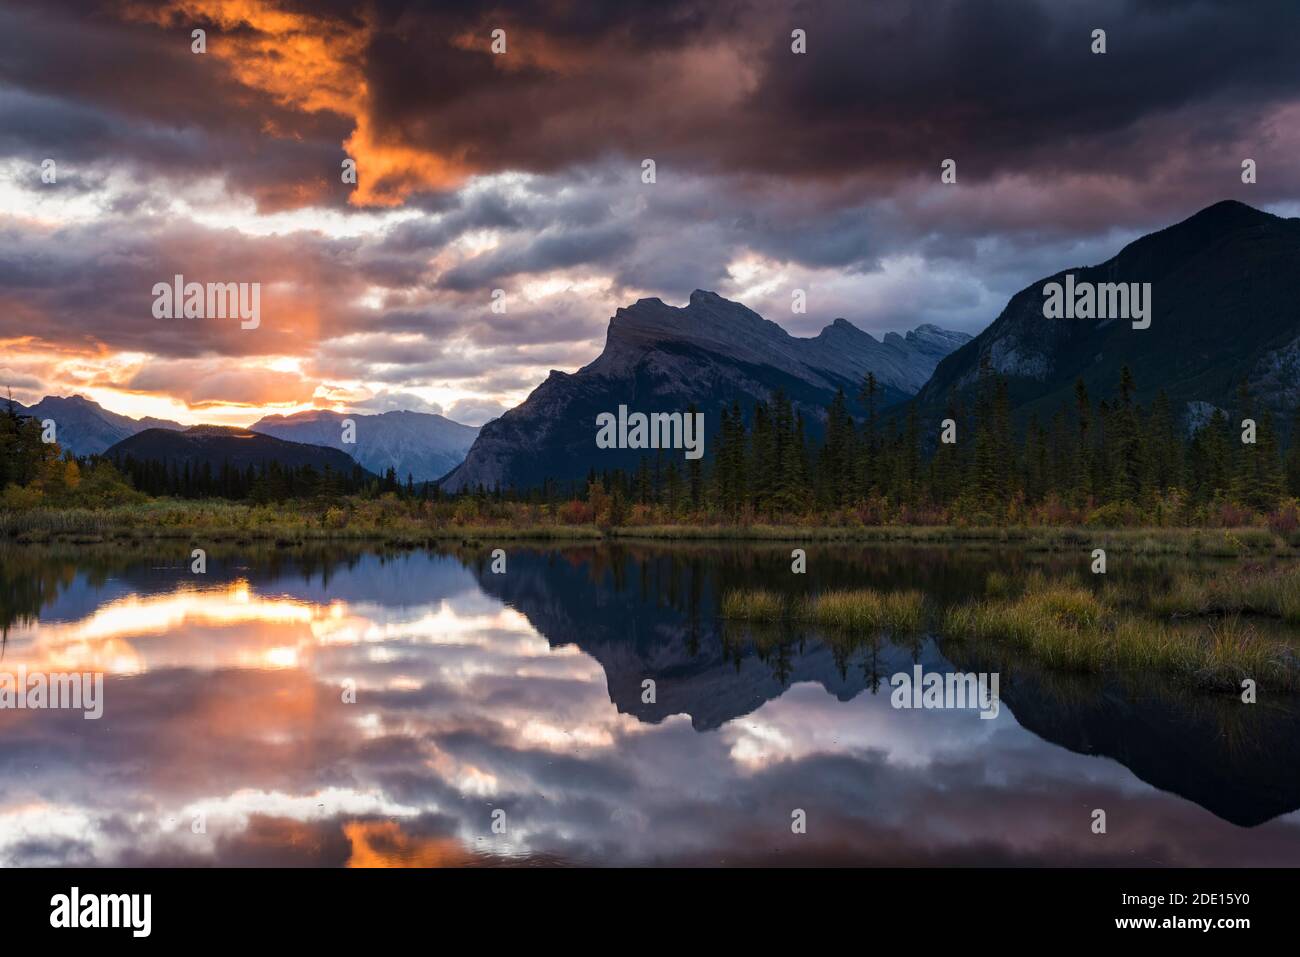 Lever du soleil aux lacs Vermillion avec le mont Rundle en automne, parc national Banff, UNESCO, Alberta, Rocheuses canadiennes, Canada, Amérique du Nord Banque D'Images